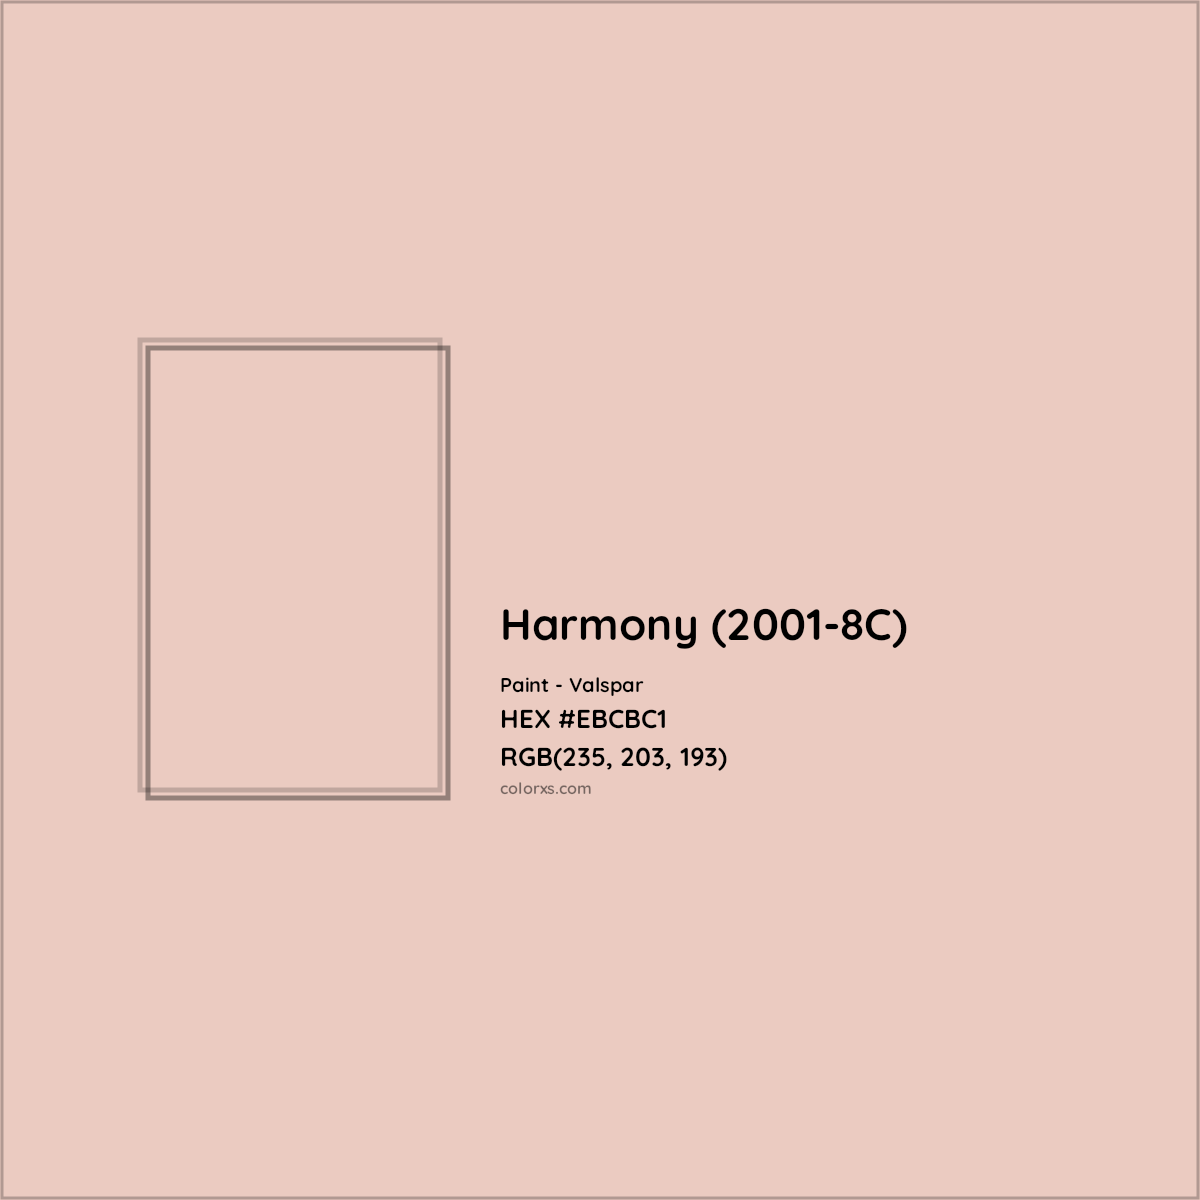 HEX #EBCBC1 Harmony (2001-8C) Paint Valspar - Color Code